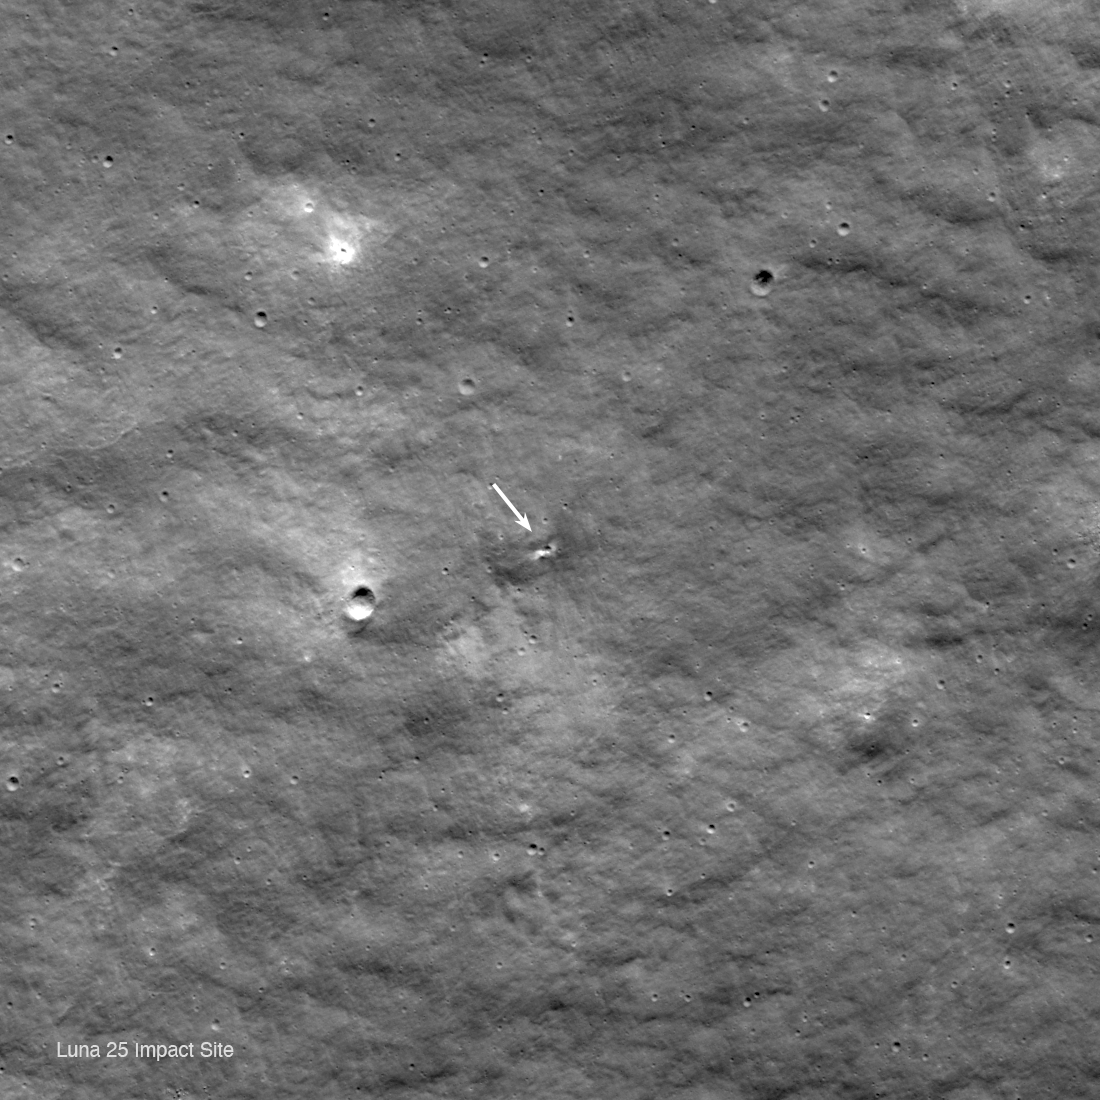 Luna 25 impact crater